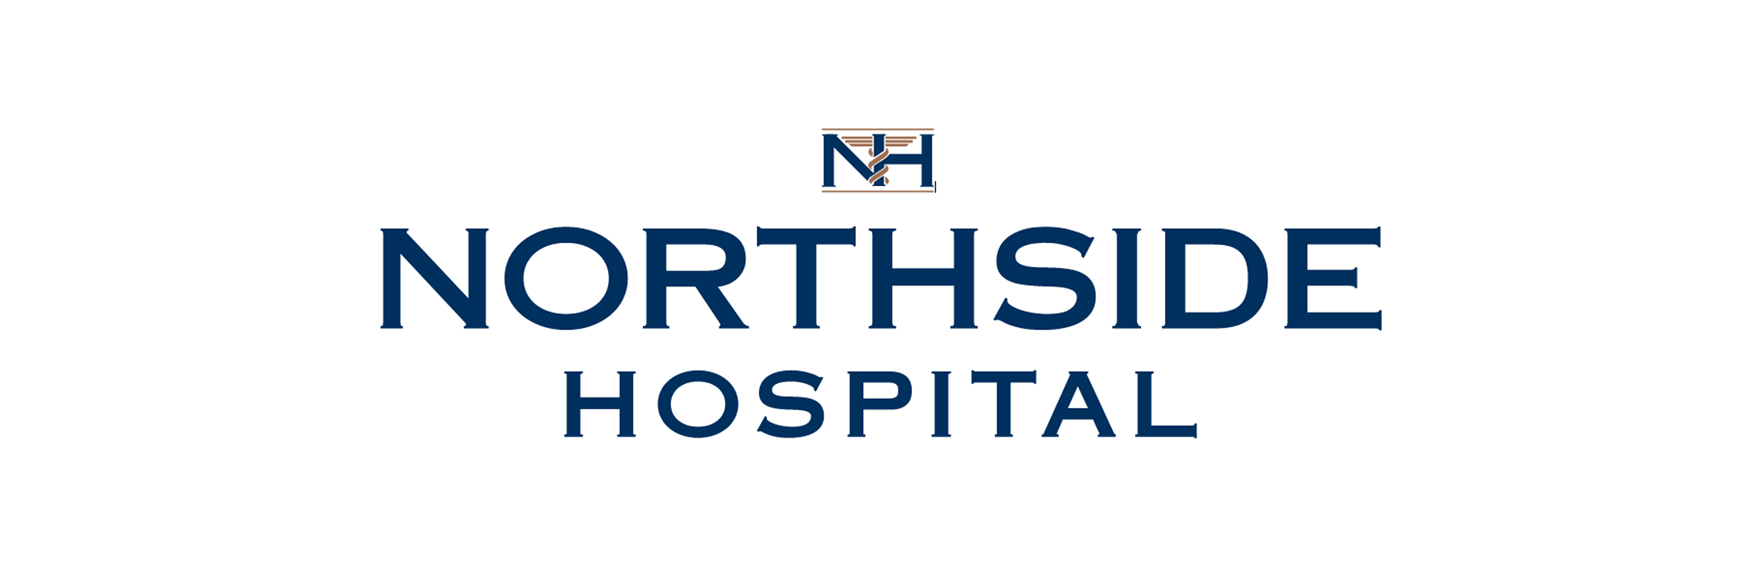 Northside Hospital Pharmacies